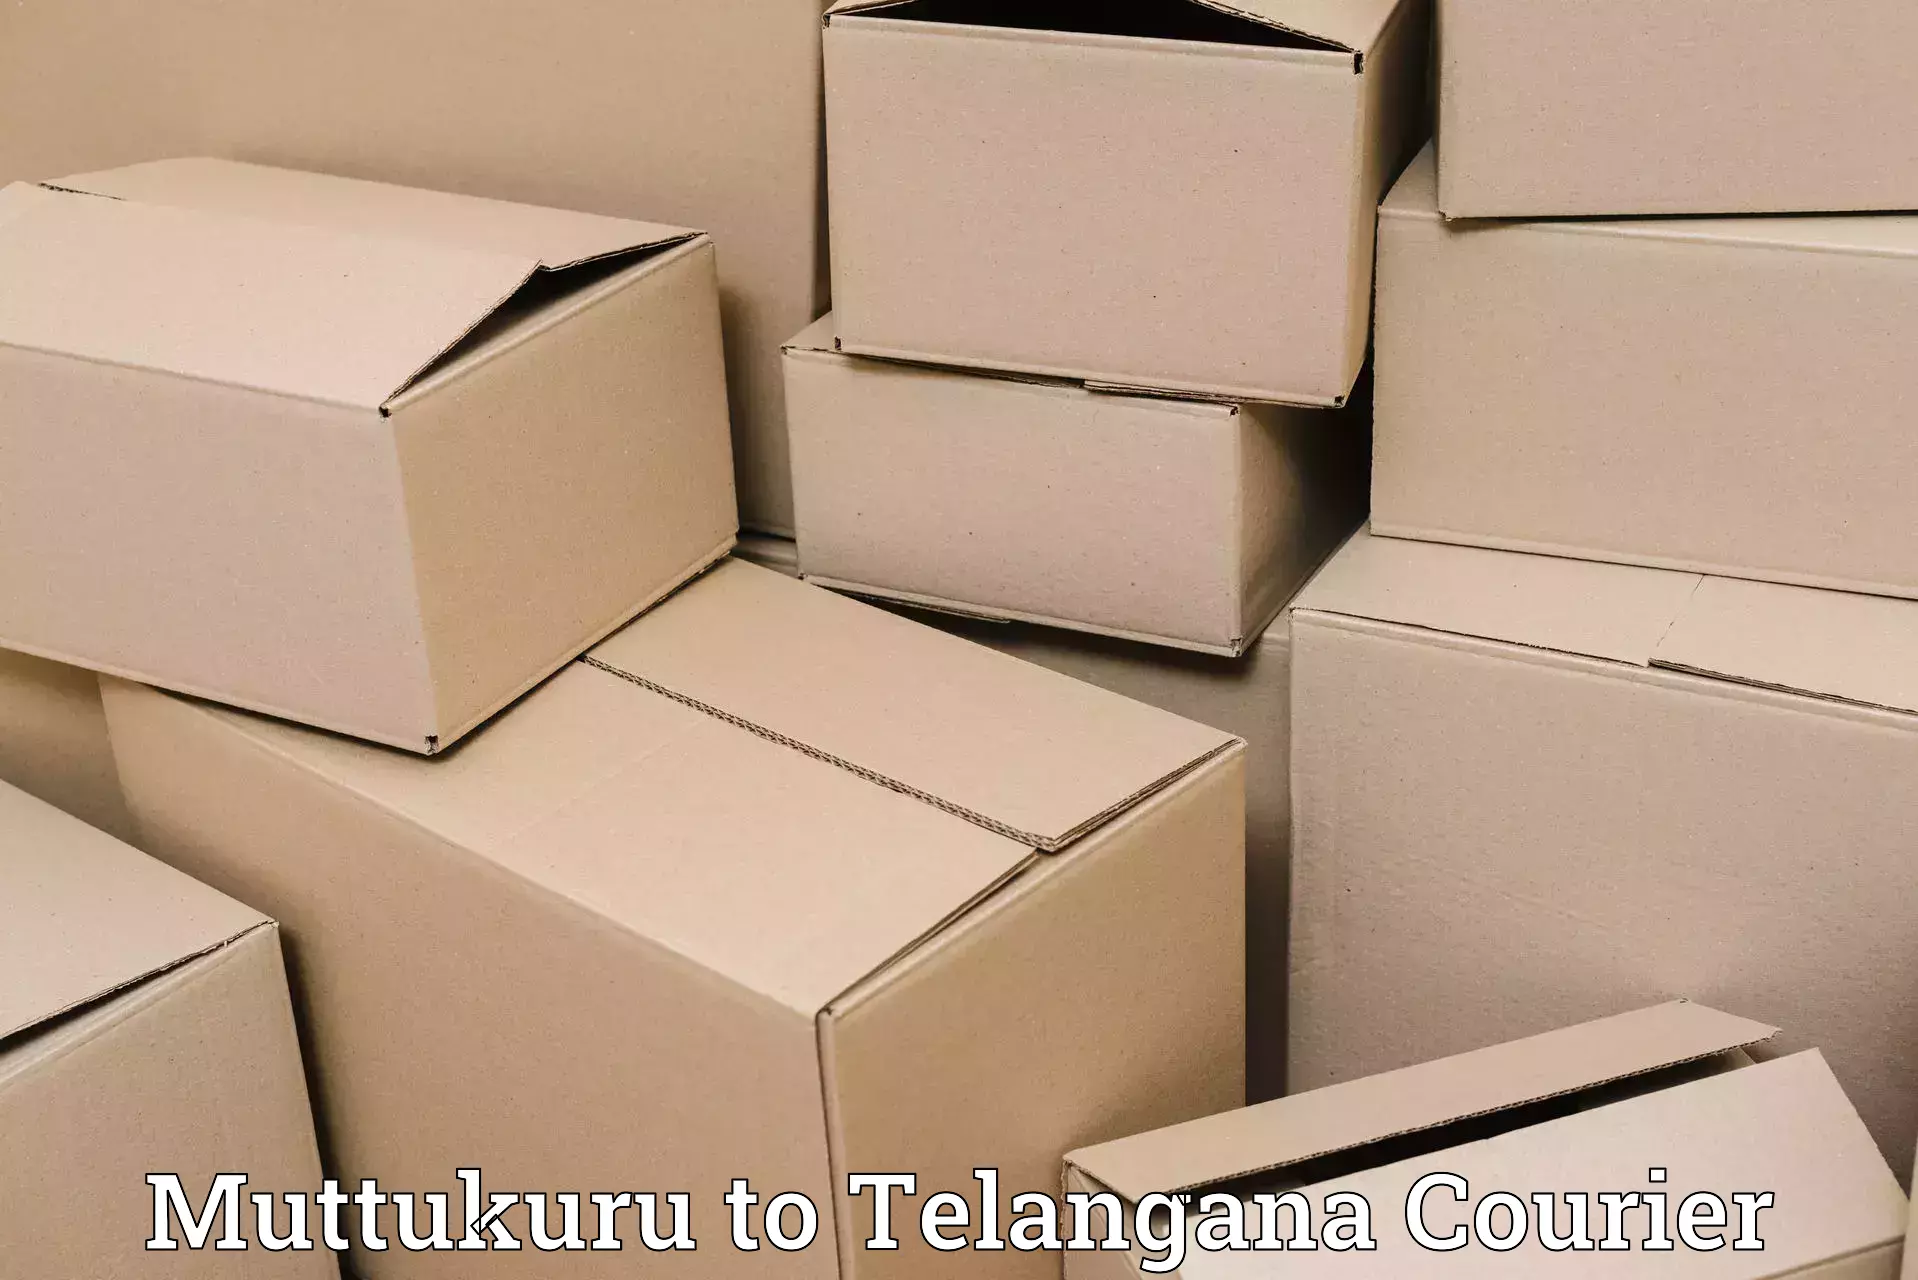 Nationwide courier service Muttukuru to Telangana